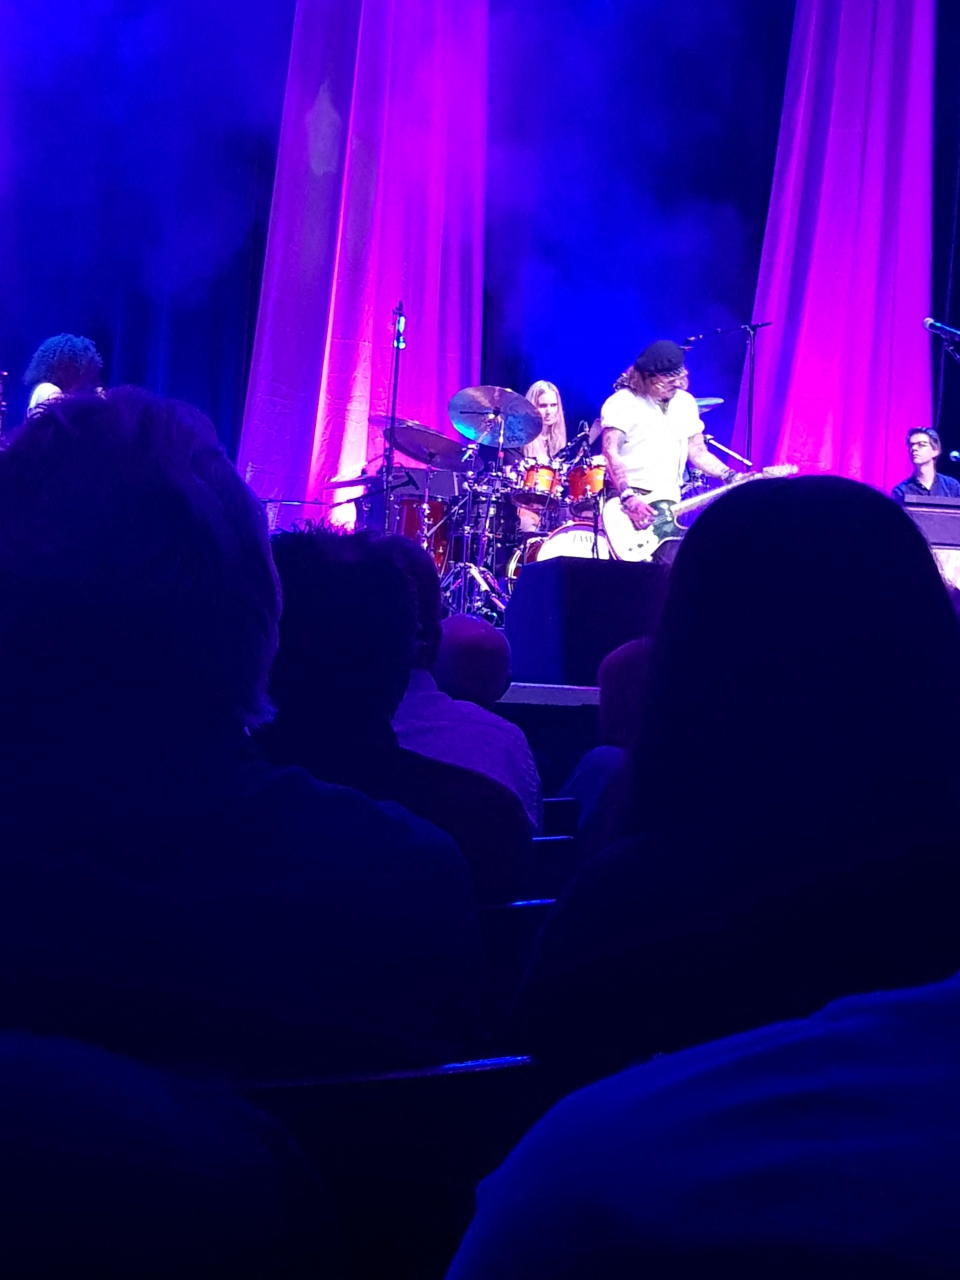 Johnny Depp se unió al músico Jeff Beck en el escenario durante un concierto en Sheffield, Gran Bretaña, el 29 de mayo, 2022 iP. Donovan/via REUTERS  THIS IMAGE HAS BEEN SUPPLIED BY A THIRD PARTY. MANDATORY CREDIT.